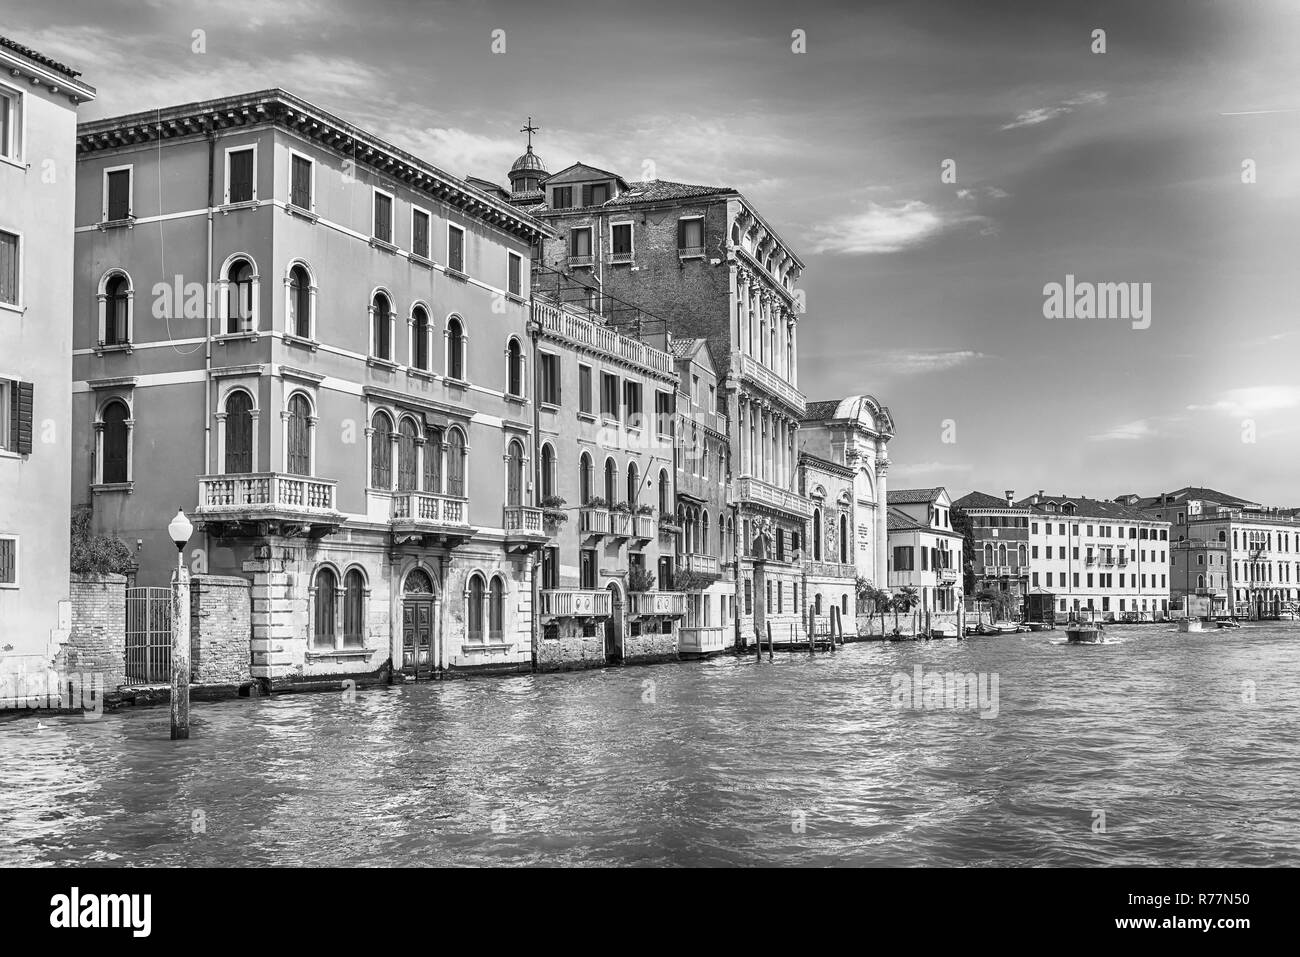 L'architecture pittoresque le long du Grand Canal à Venise, Italie Banque D'Images